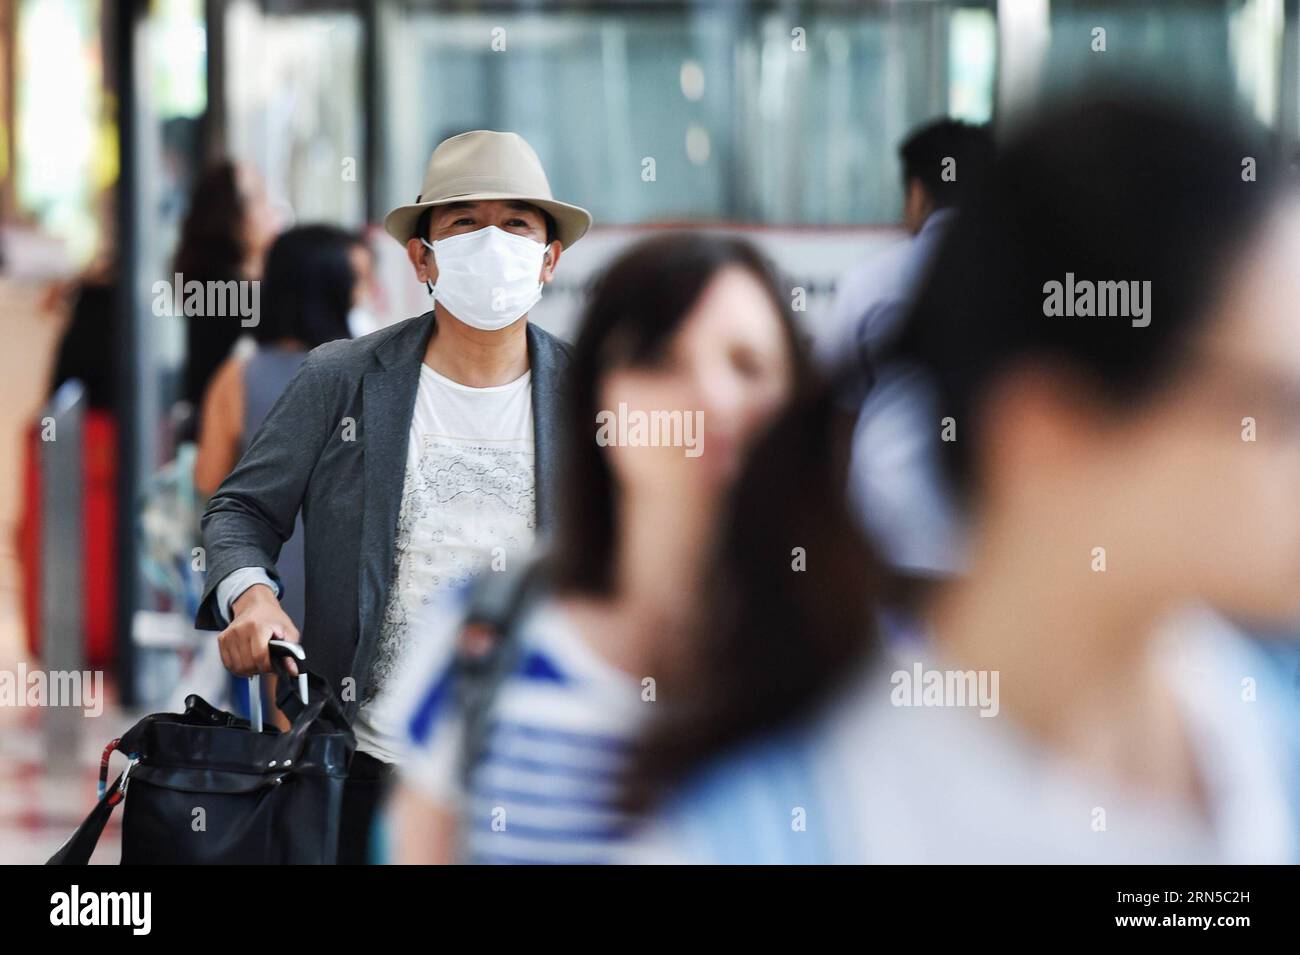 (150620) -- BANGKOK, le 20 juin 2015 -- Un voyageur est vu portant un masque facial à son arrivée à l'aéroport Suvarnabhumi de Bangkok, Thaïlande, le 20 juin 2015. Le ministère de la Santé publique de Thaïlande a confirmé jeudi le premier cas de syndrome respiratoire du Moyen-Orient (mers). A Bangkok, la capitale du pays et un centre de transport international, les citoyens et les voyageurs ont commencé à adopter des méthodes préventives telles que le port de masques protecteurs pour le visage. THAÏLANDE-BANGKOK-mers-DISEASE-PREVENTION LixMangmang PUBLICATIONxNOTxINxCHN 150620 Bangkok juin 20 2015 un voyageur EST Lakes Wearing F Banque D'Images